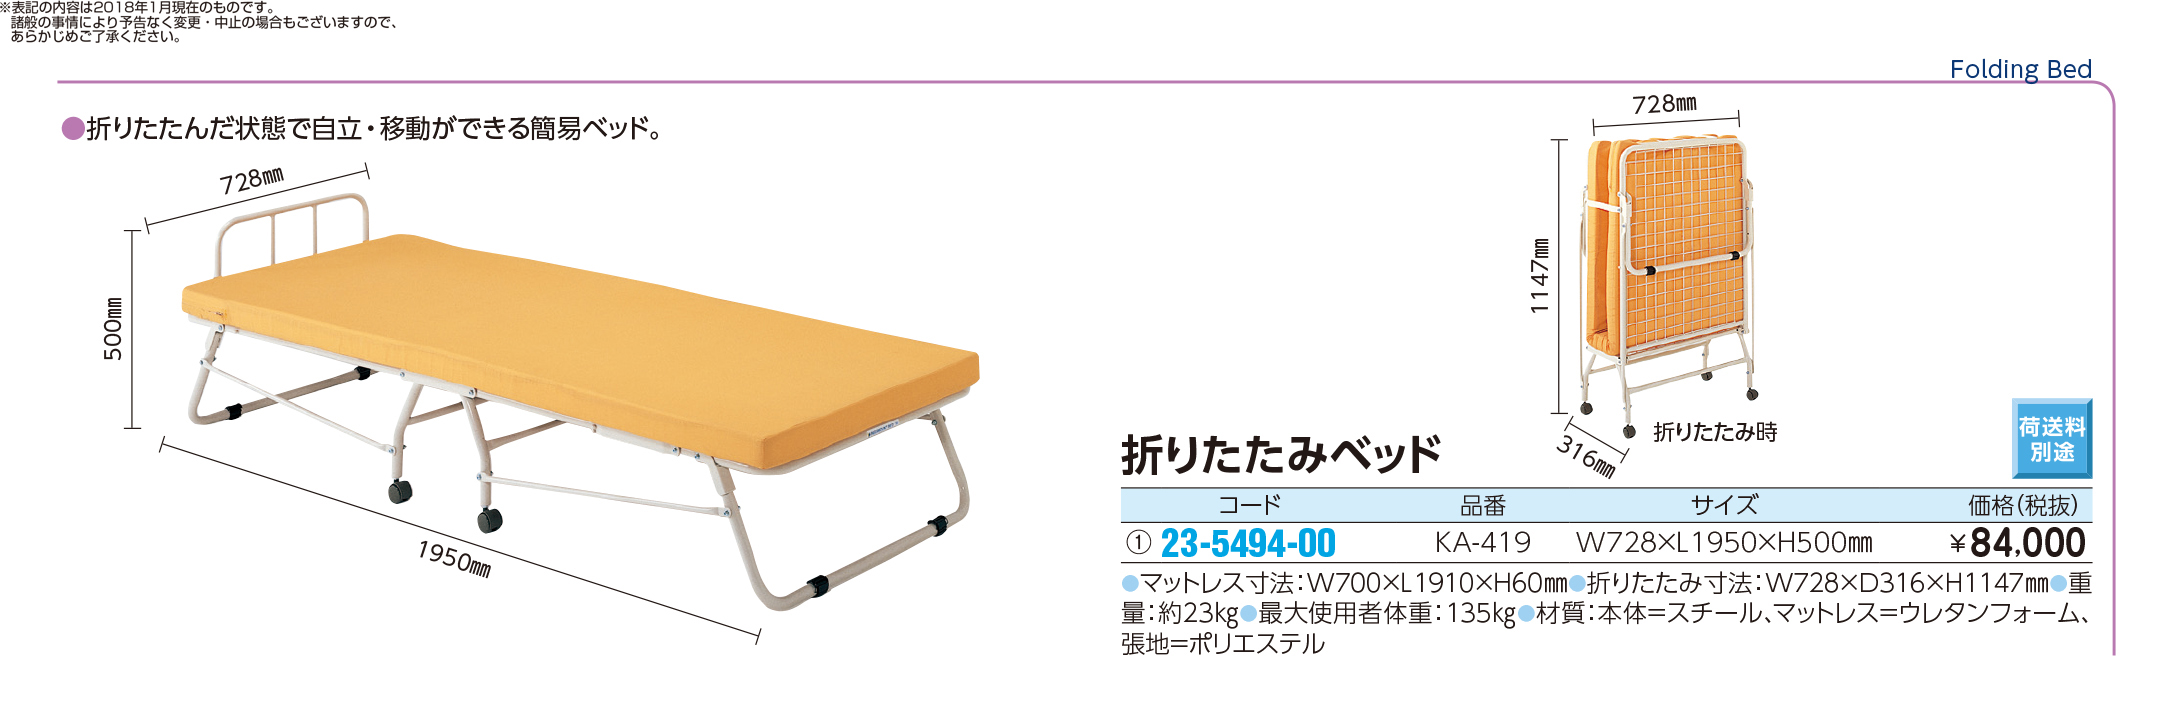 (23-5494-00)折りたたみ式ベッド KA-419 ｵﾘﾀﾀﾐｼﾍﾞｯﾄﾞ(パラマウントベッド)【1台単位】【2018年カタログ商品】